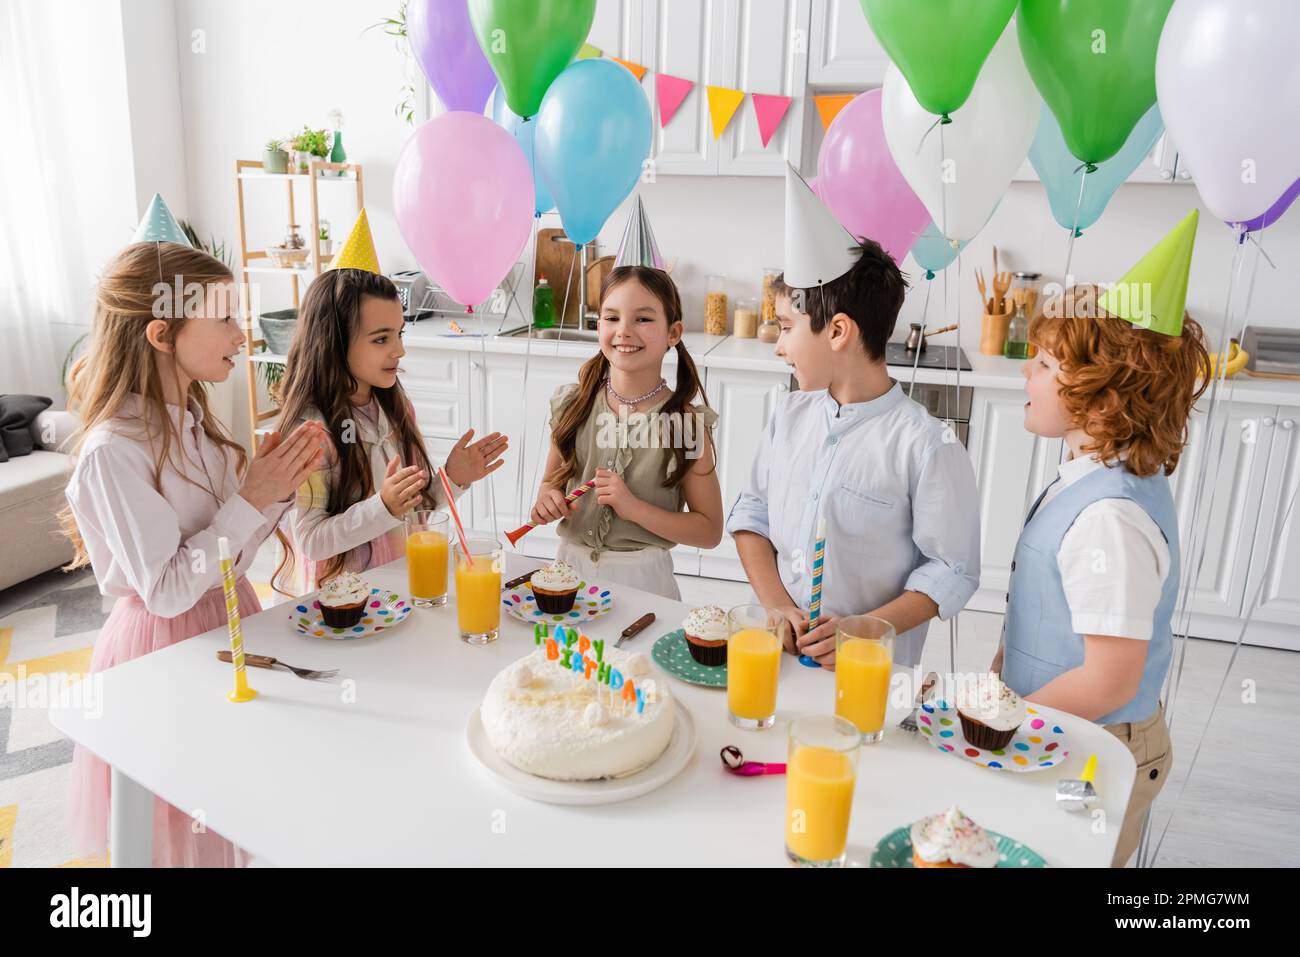 bambini positivi che battono le mani e cantano felice canzone di compleanno accanto alla torta con candele e palloncini, immagine stock Foto Stock